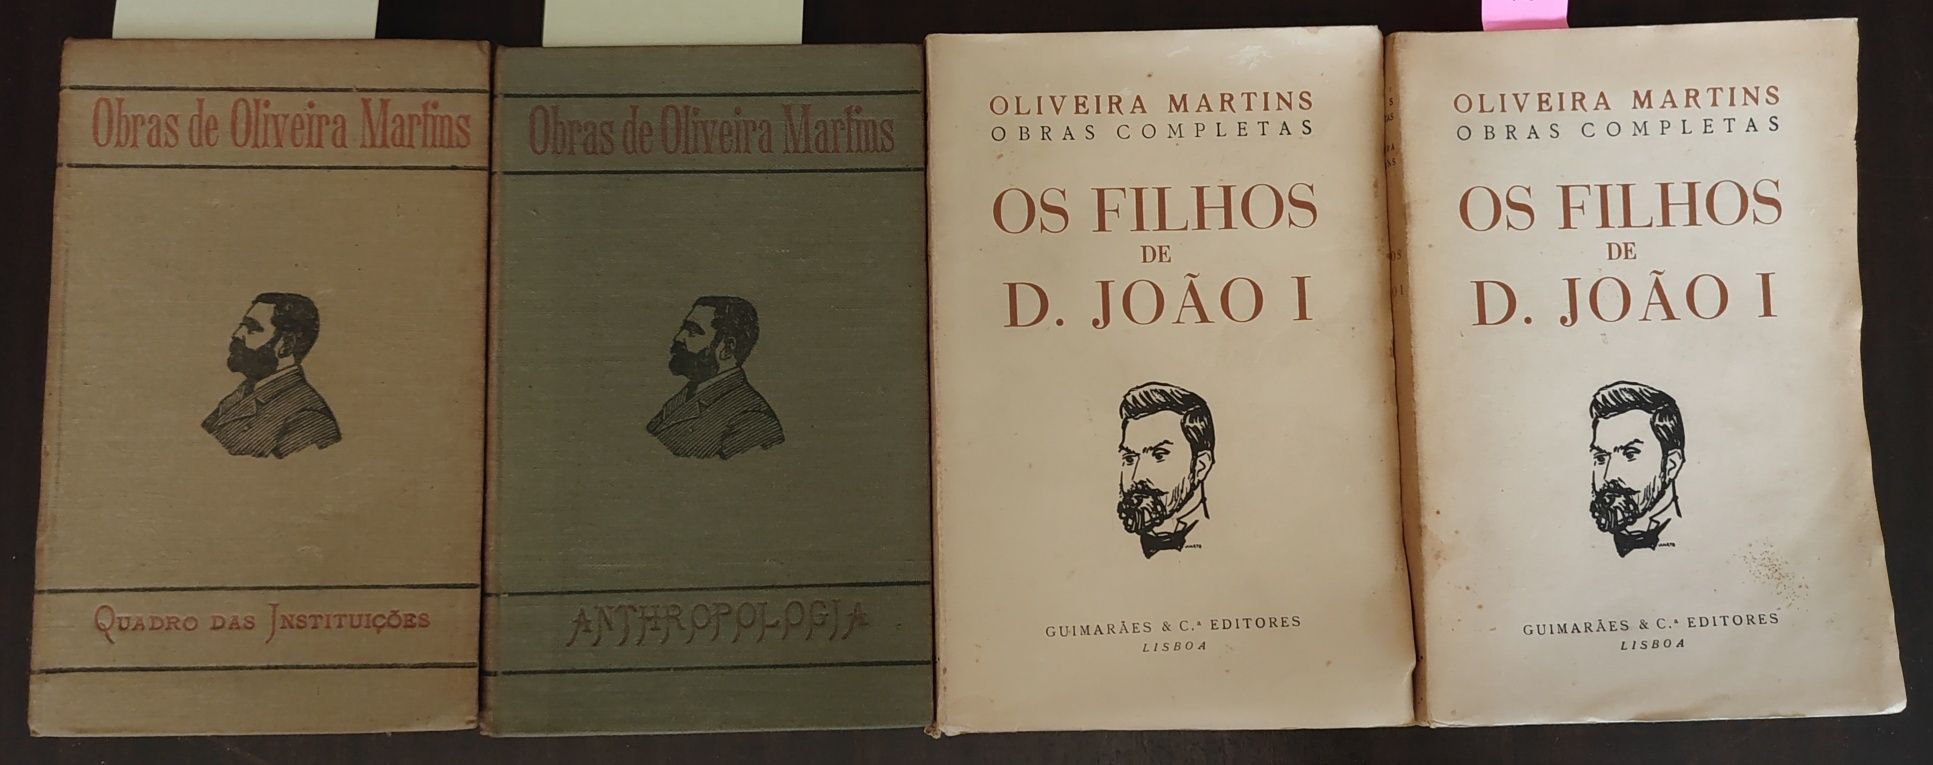 4 livros de Oliveira Martins